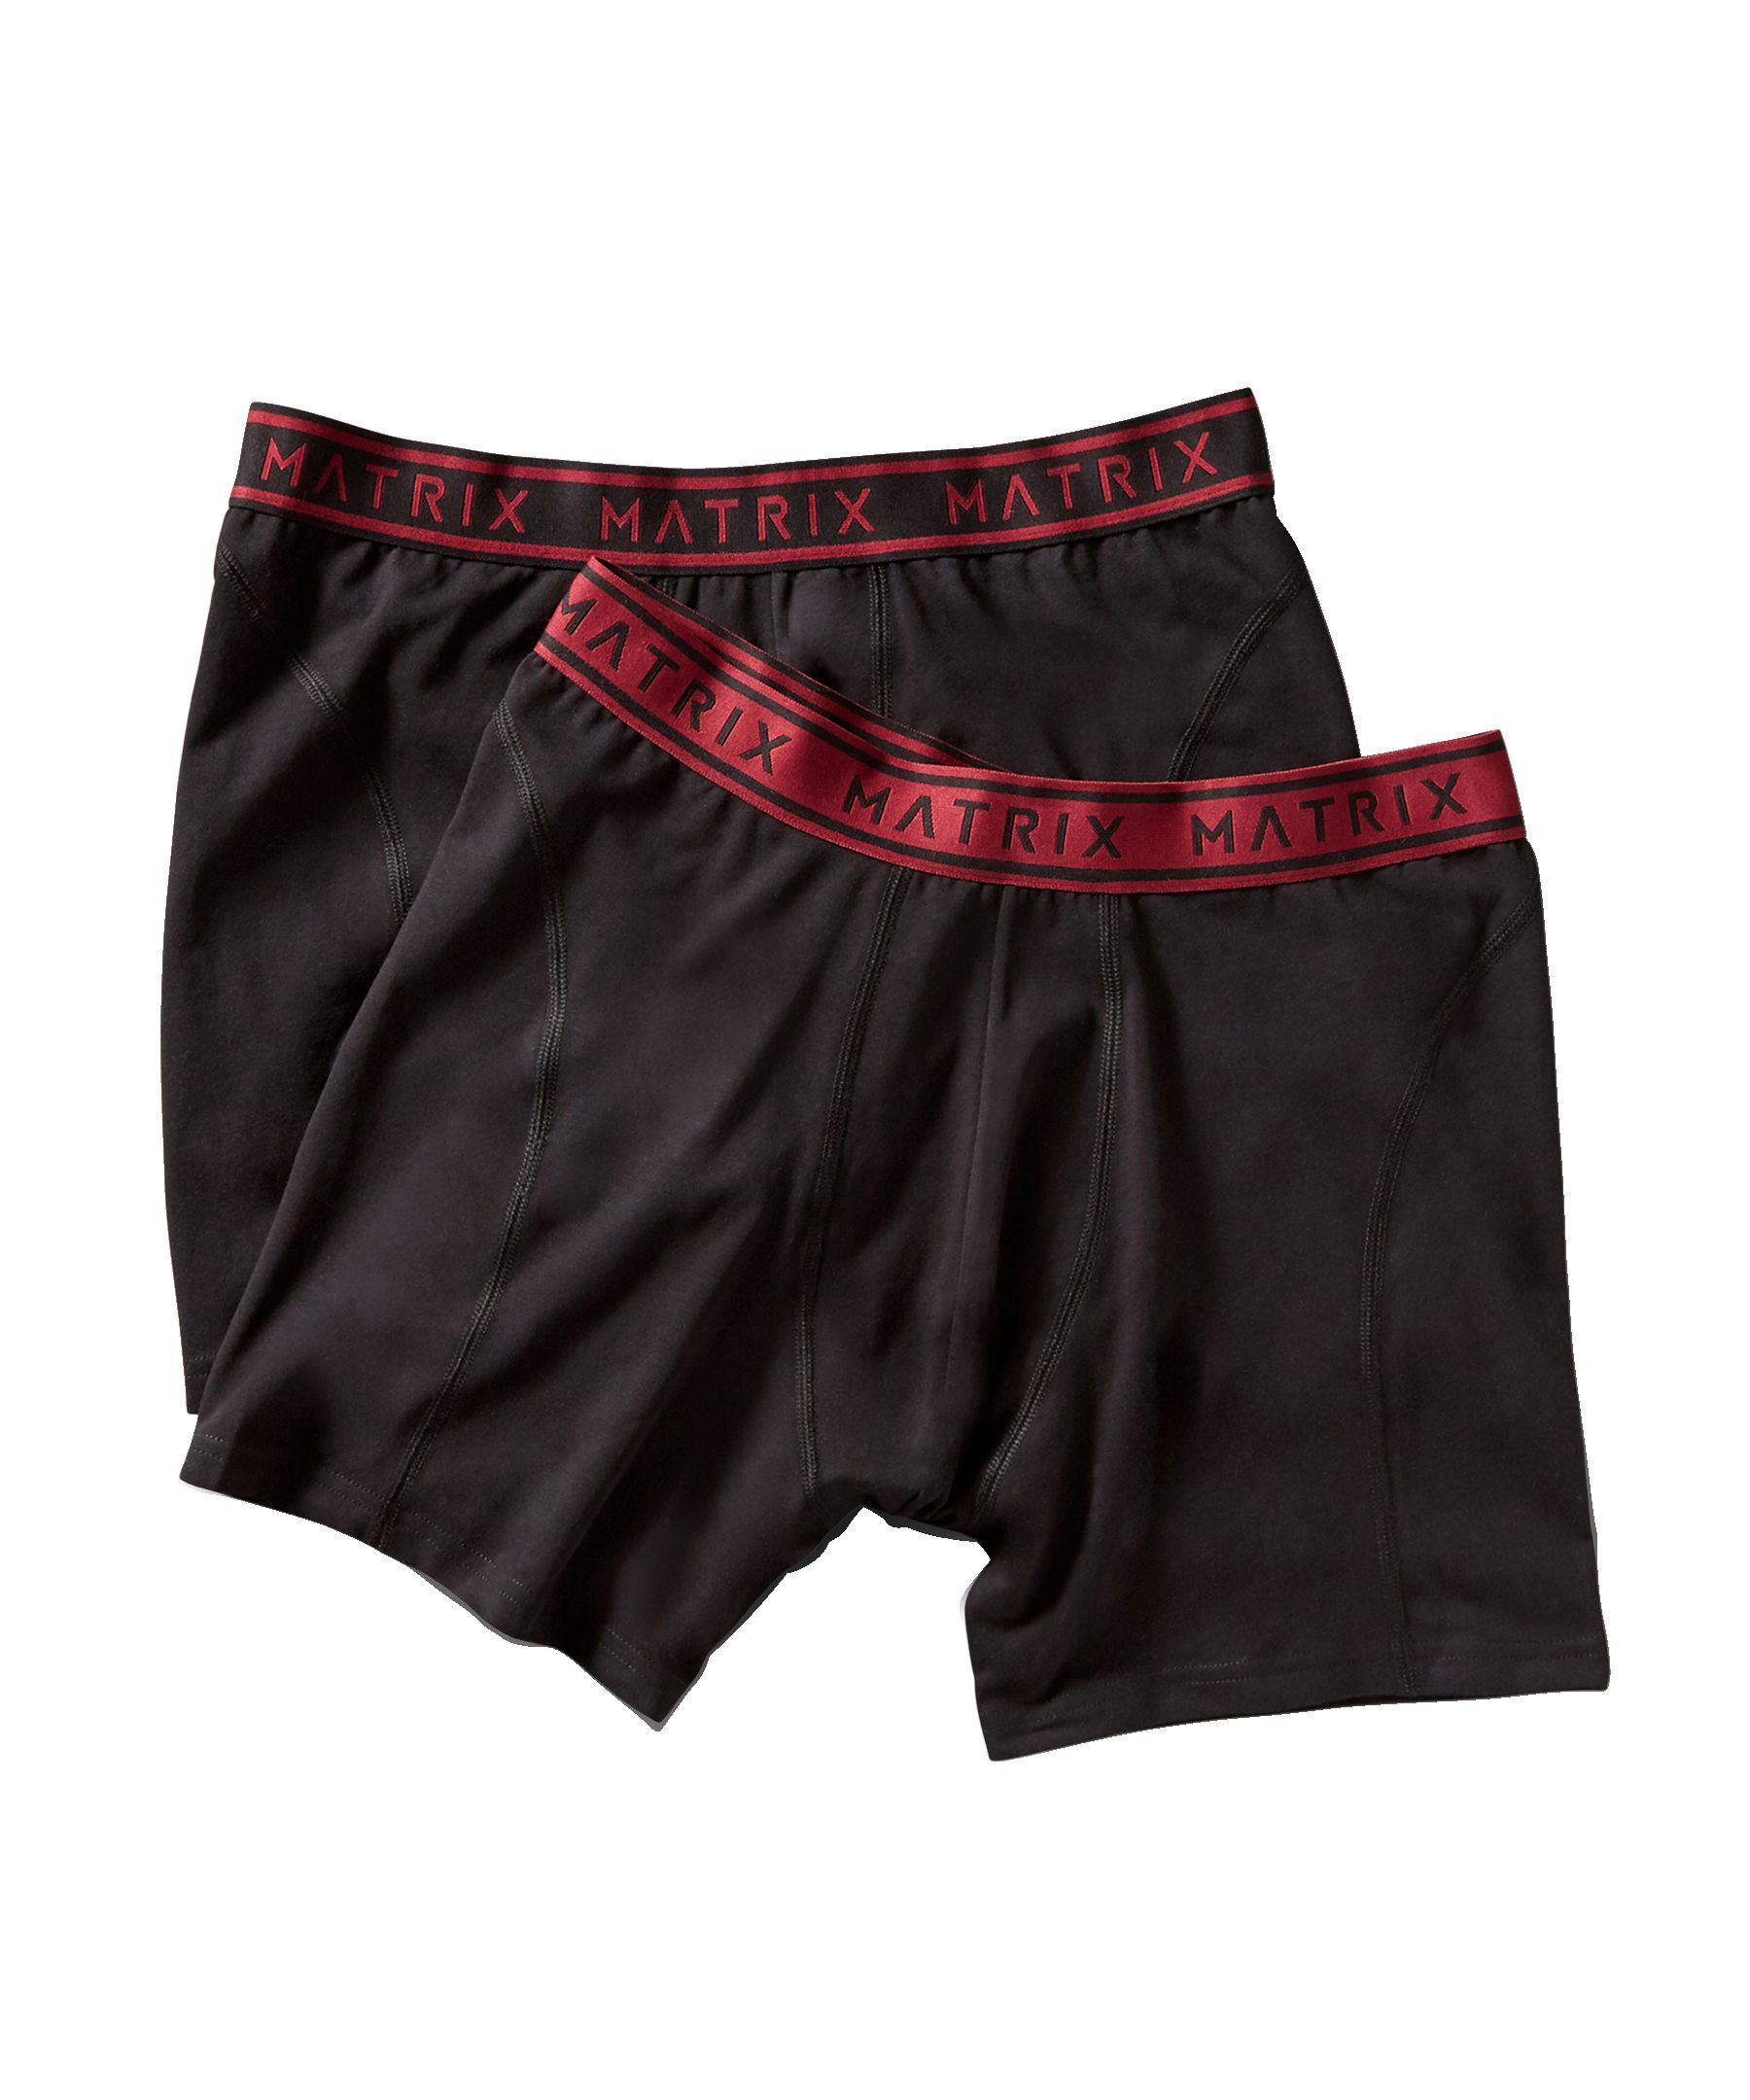 6 PK Cotton Toddler Little Boys Kids Underwear Boxer Briefs Underpants Size  4T 5T 6T 7T 8T -  Canada